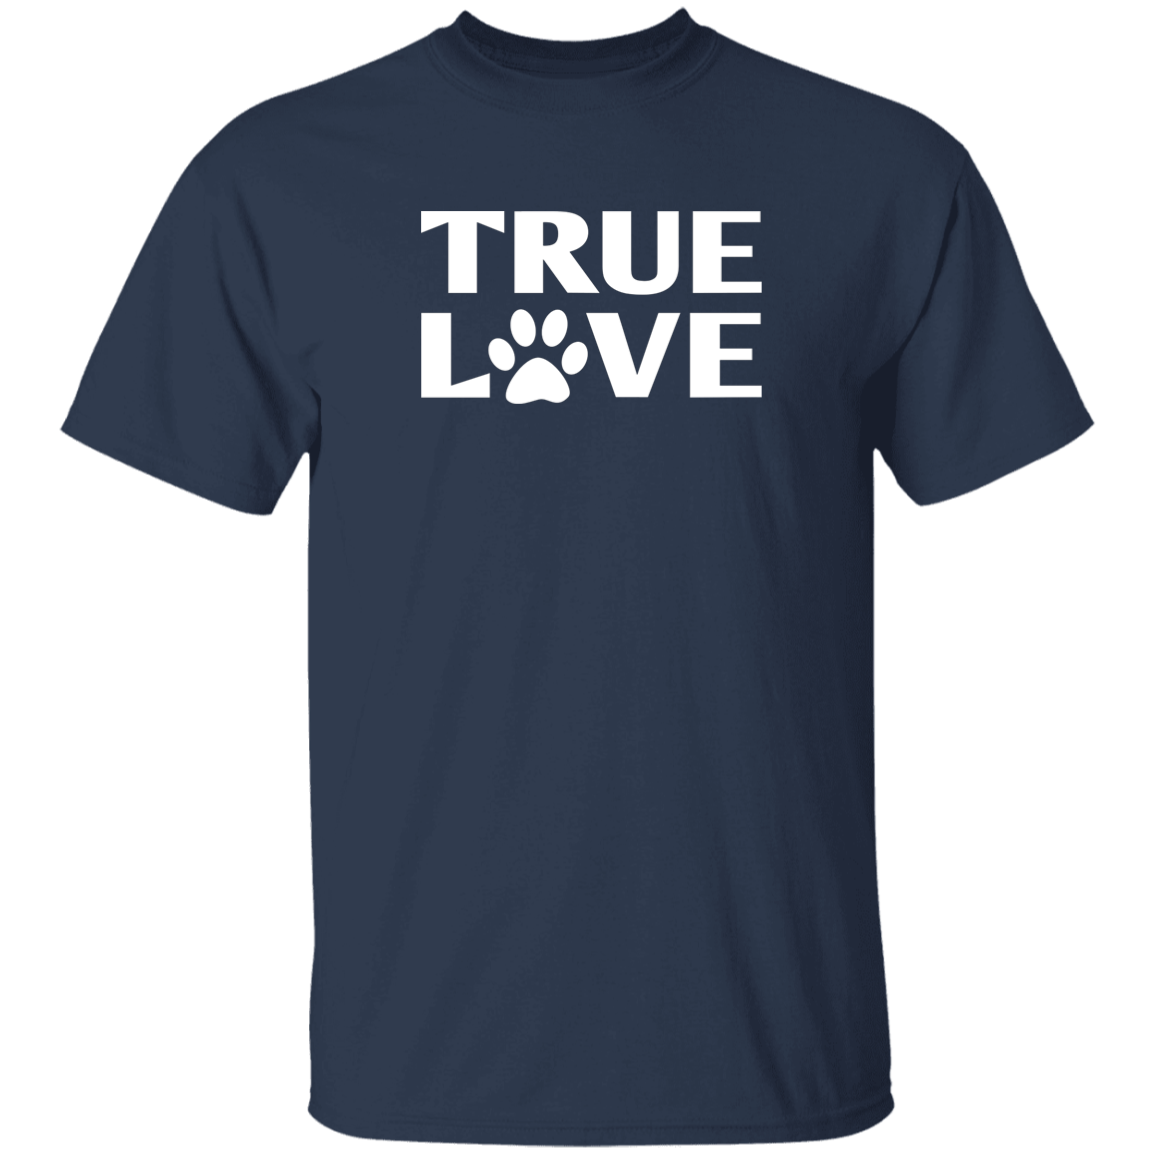 TRUE LOVE T-Shirt